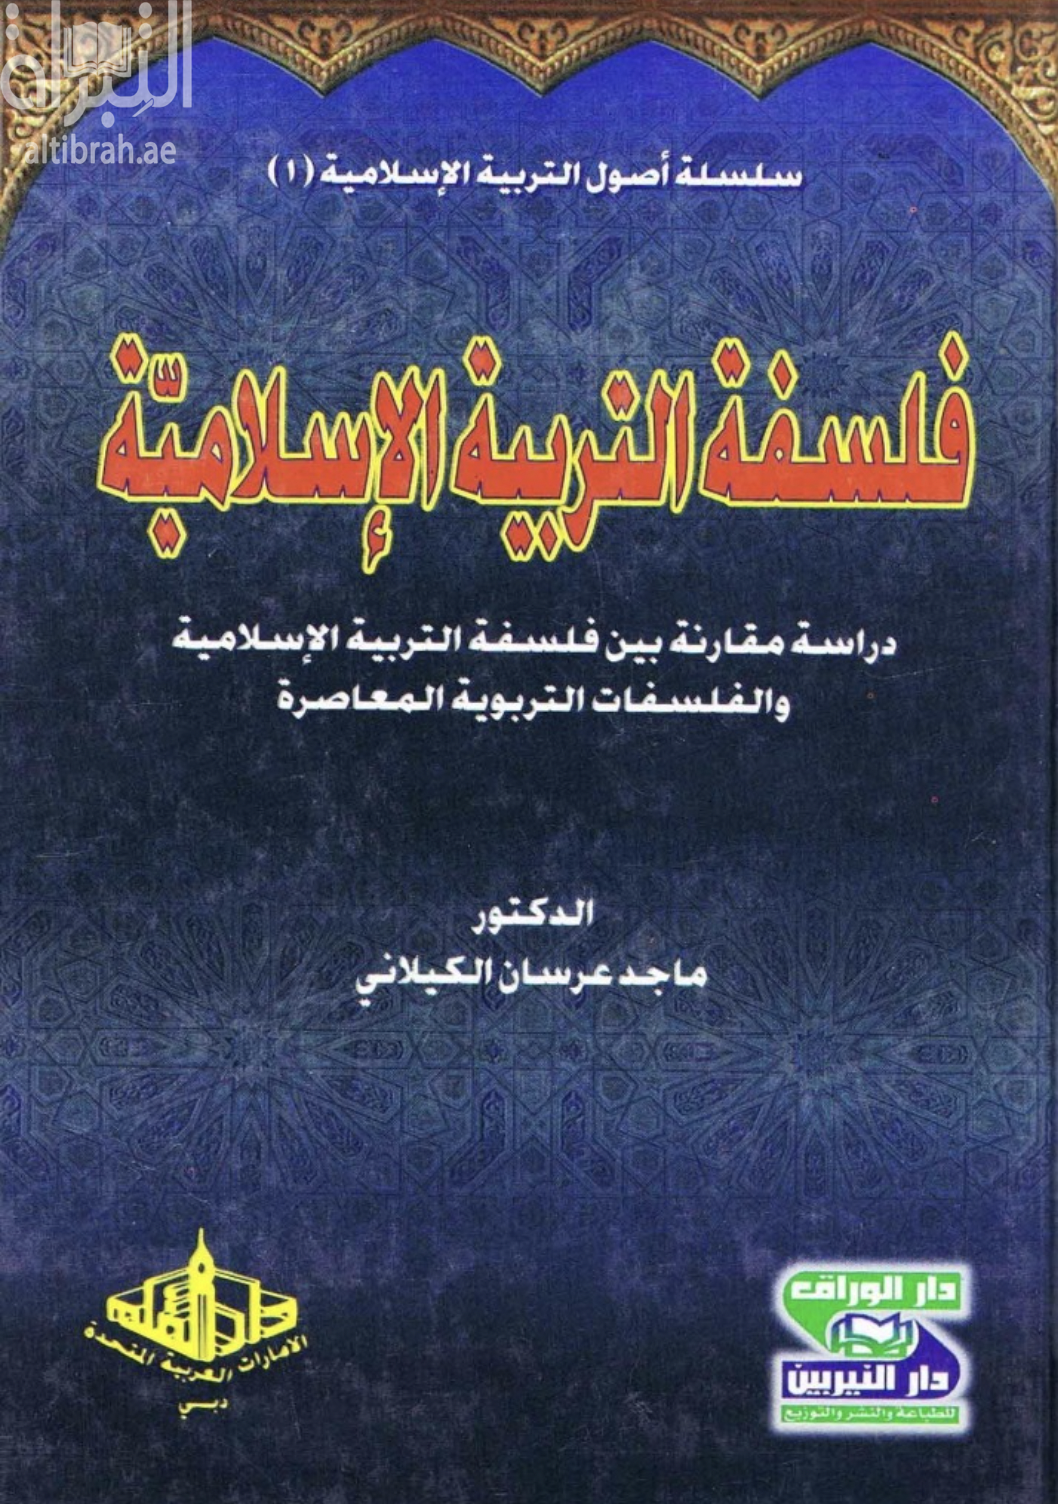 غلاف كتاب فلسفة التربية الإسلامية : دراسة مقارنة بين فلسفة التربية الإسلامية والفلسفات التربوية المعاصرة